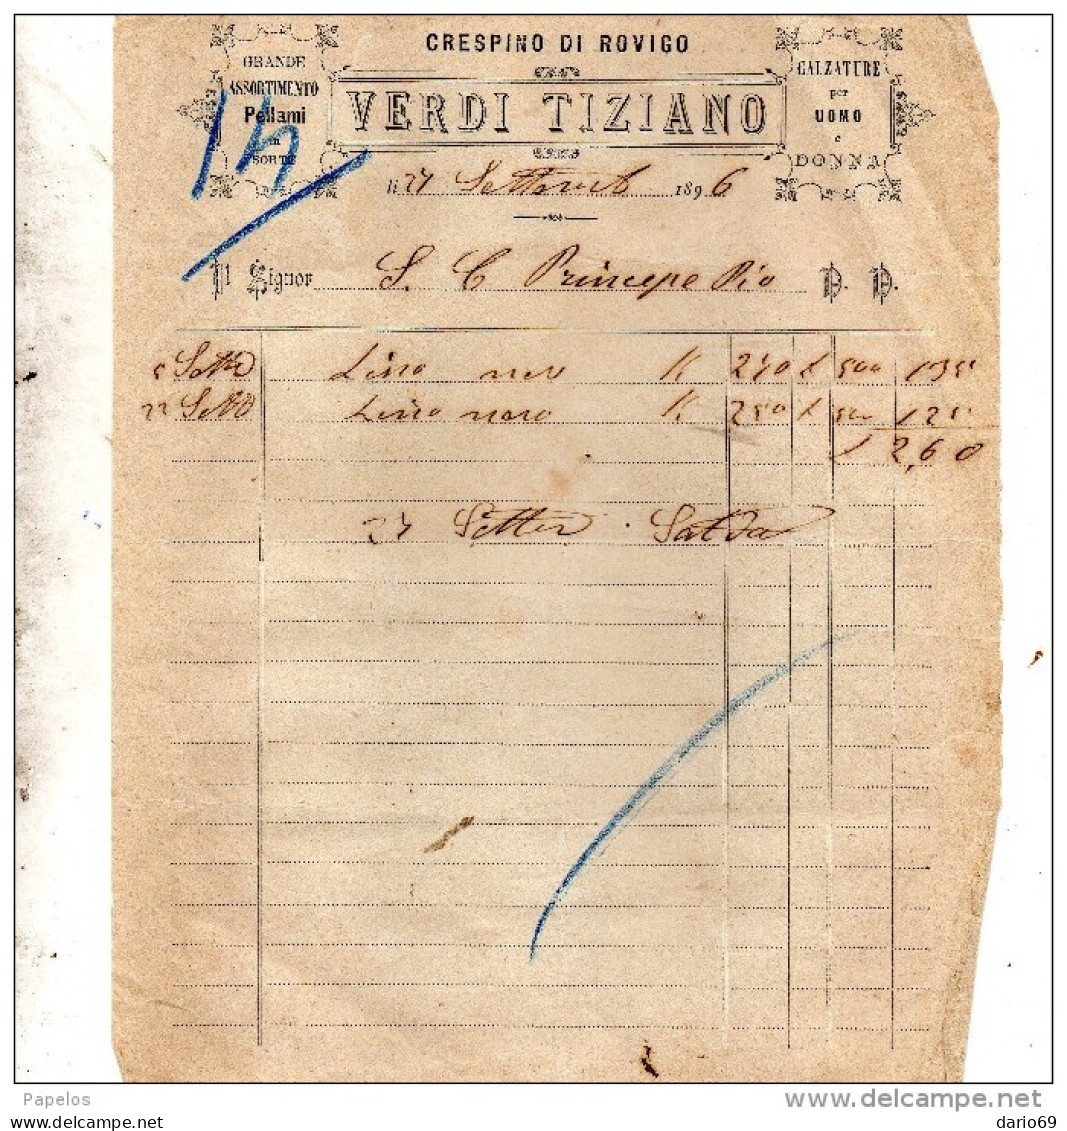 1896 CRESPINO ROVIGO - VERDI TIZIANO - CALZATURE PER UOMO - Italien